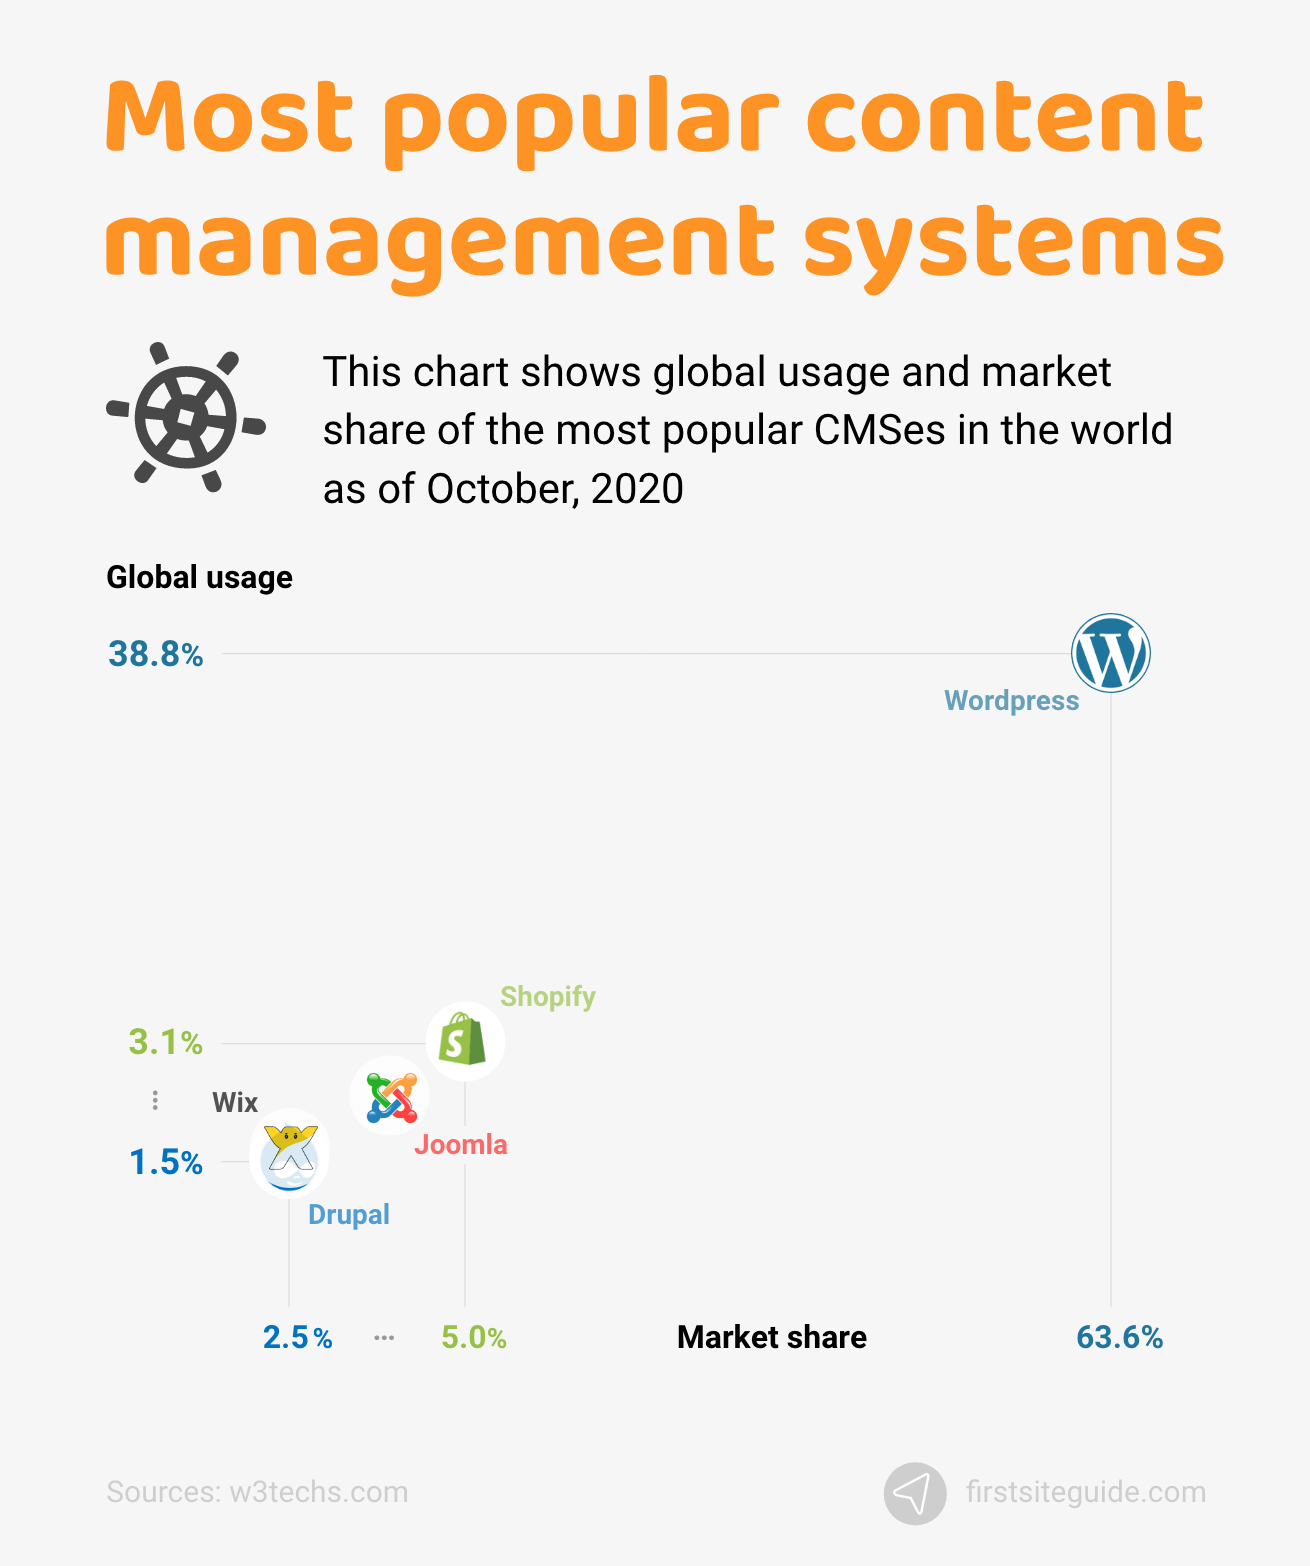 Les systèmes de gestion de contenu les plus populaires